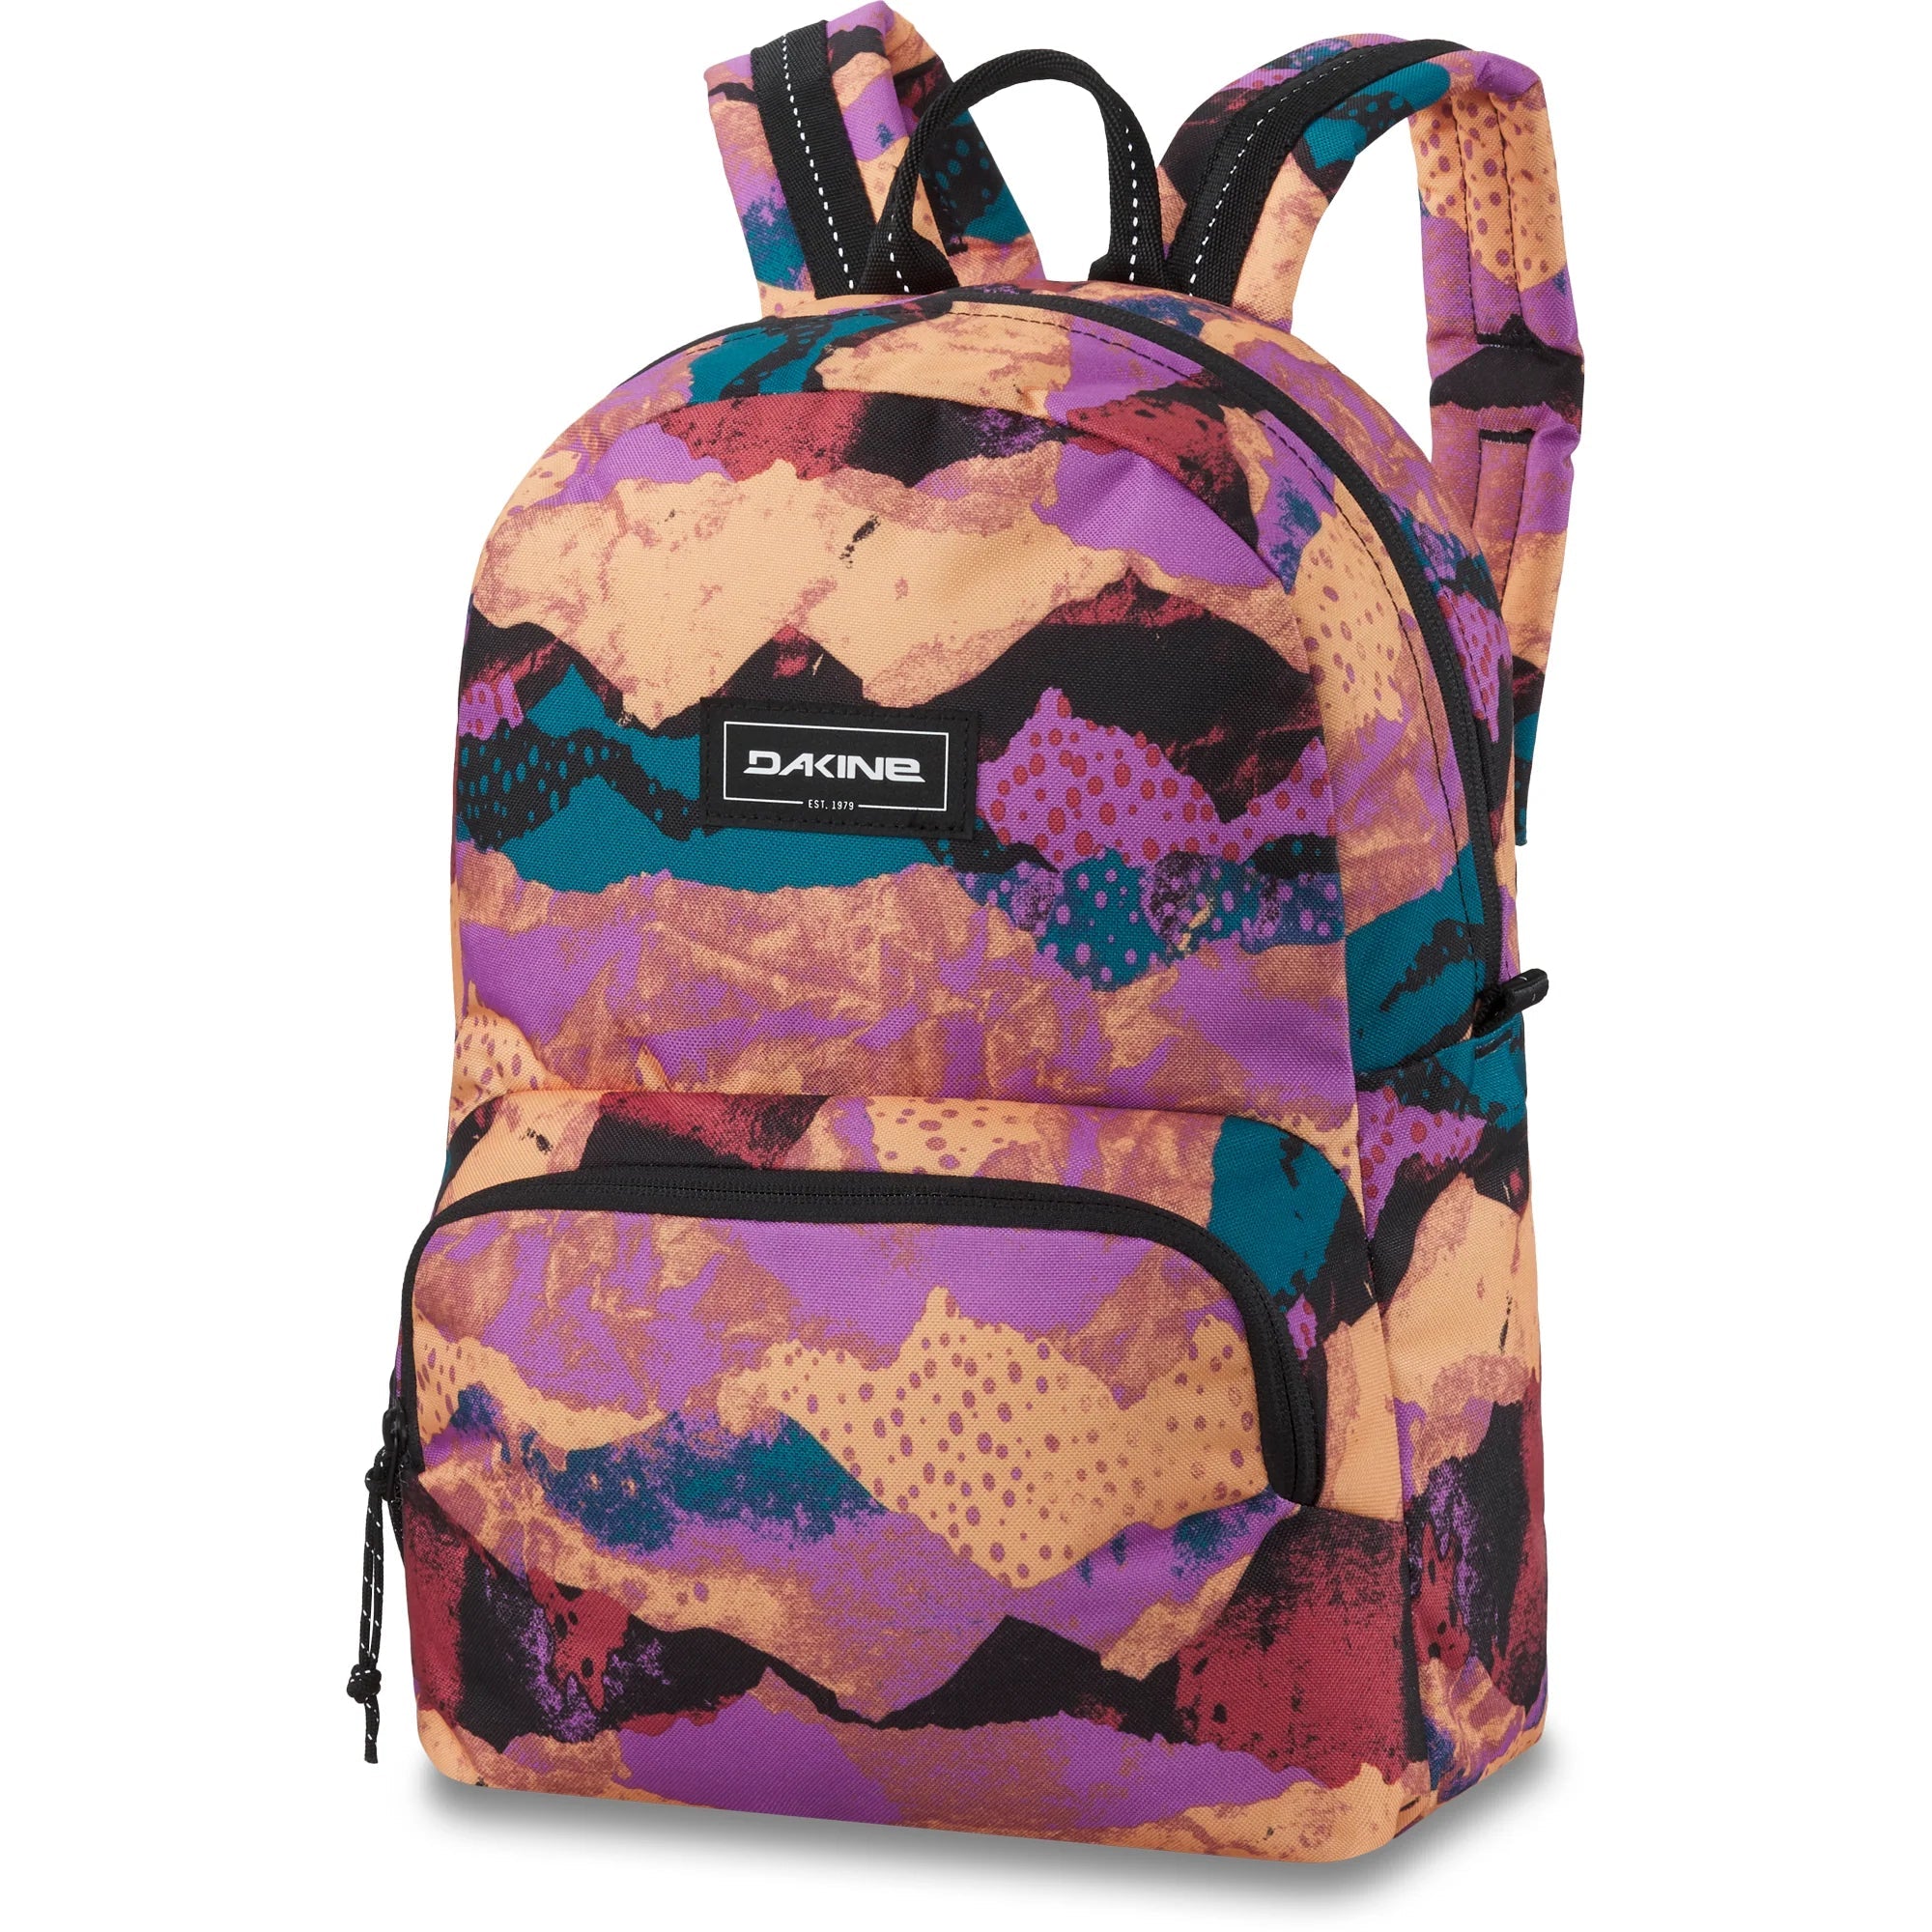 DAKINE Youth Cubby Pack 12L Backpack Crafty Backpacks Dakine 